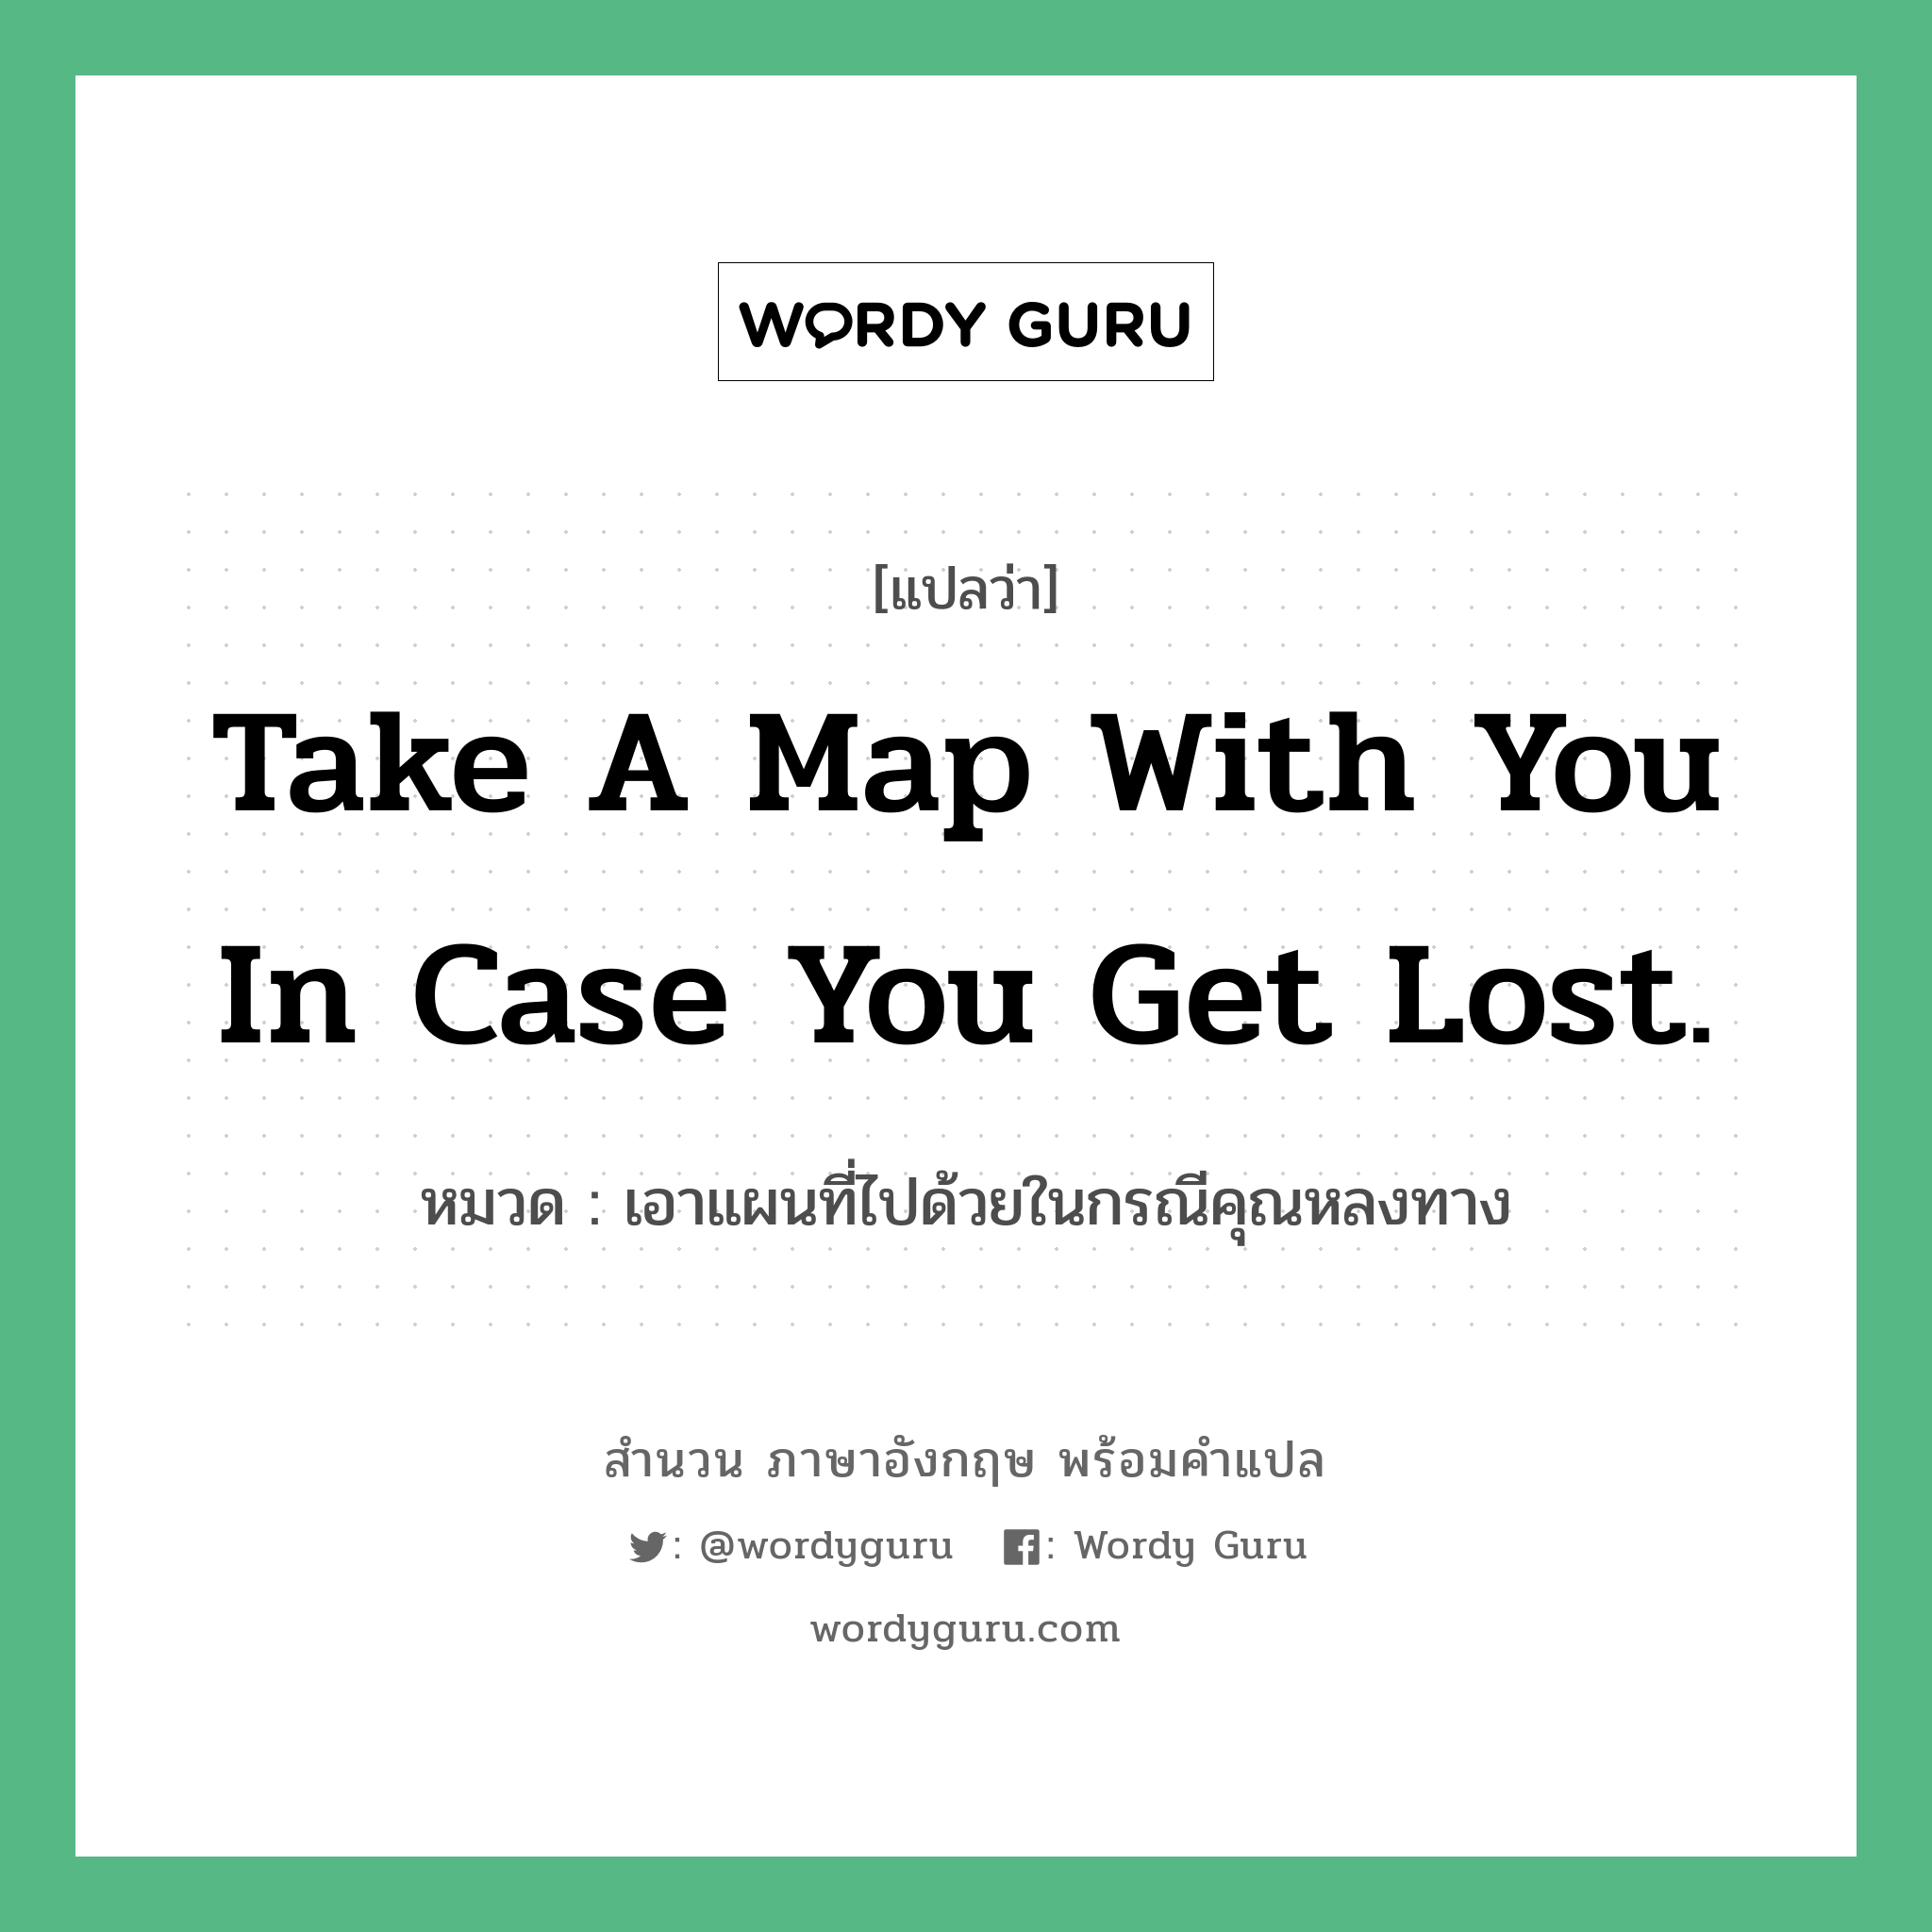 เอาแผนที่ไปด้วยในกรณีคุณหลงทาง ภาษาอังกฤษ?, สำนวนภาษาอังกฤษ เอาแผนที่ไปด้วยในกรณีคุณหลงทาง แปลว่า เอาแผนที่ไปด้วยในกรณีคุณหลงทาง หมวด Take a map with you in case you get lost.